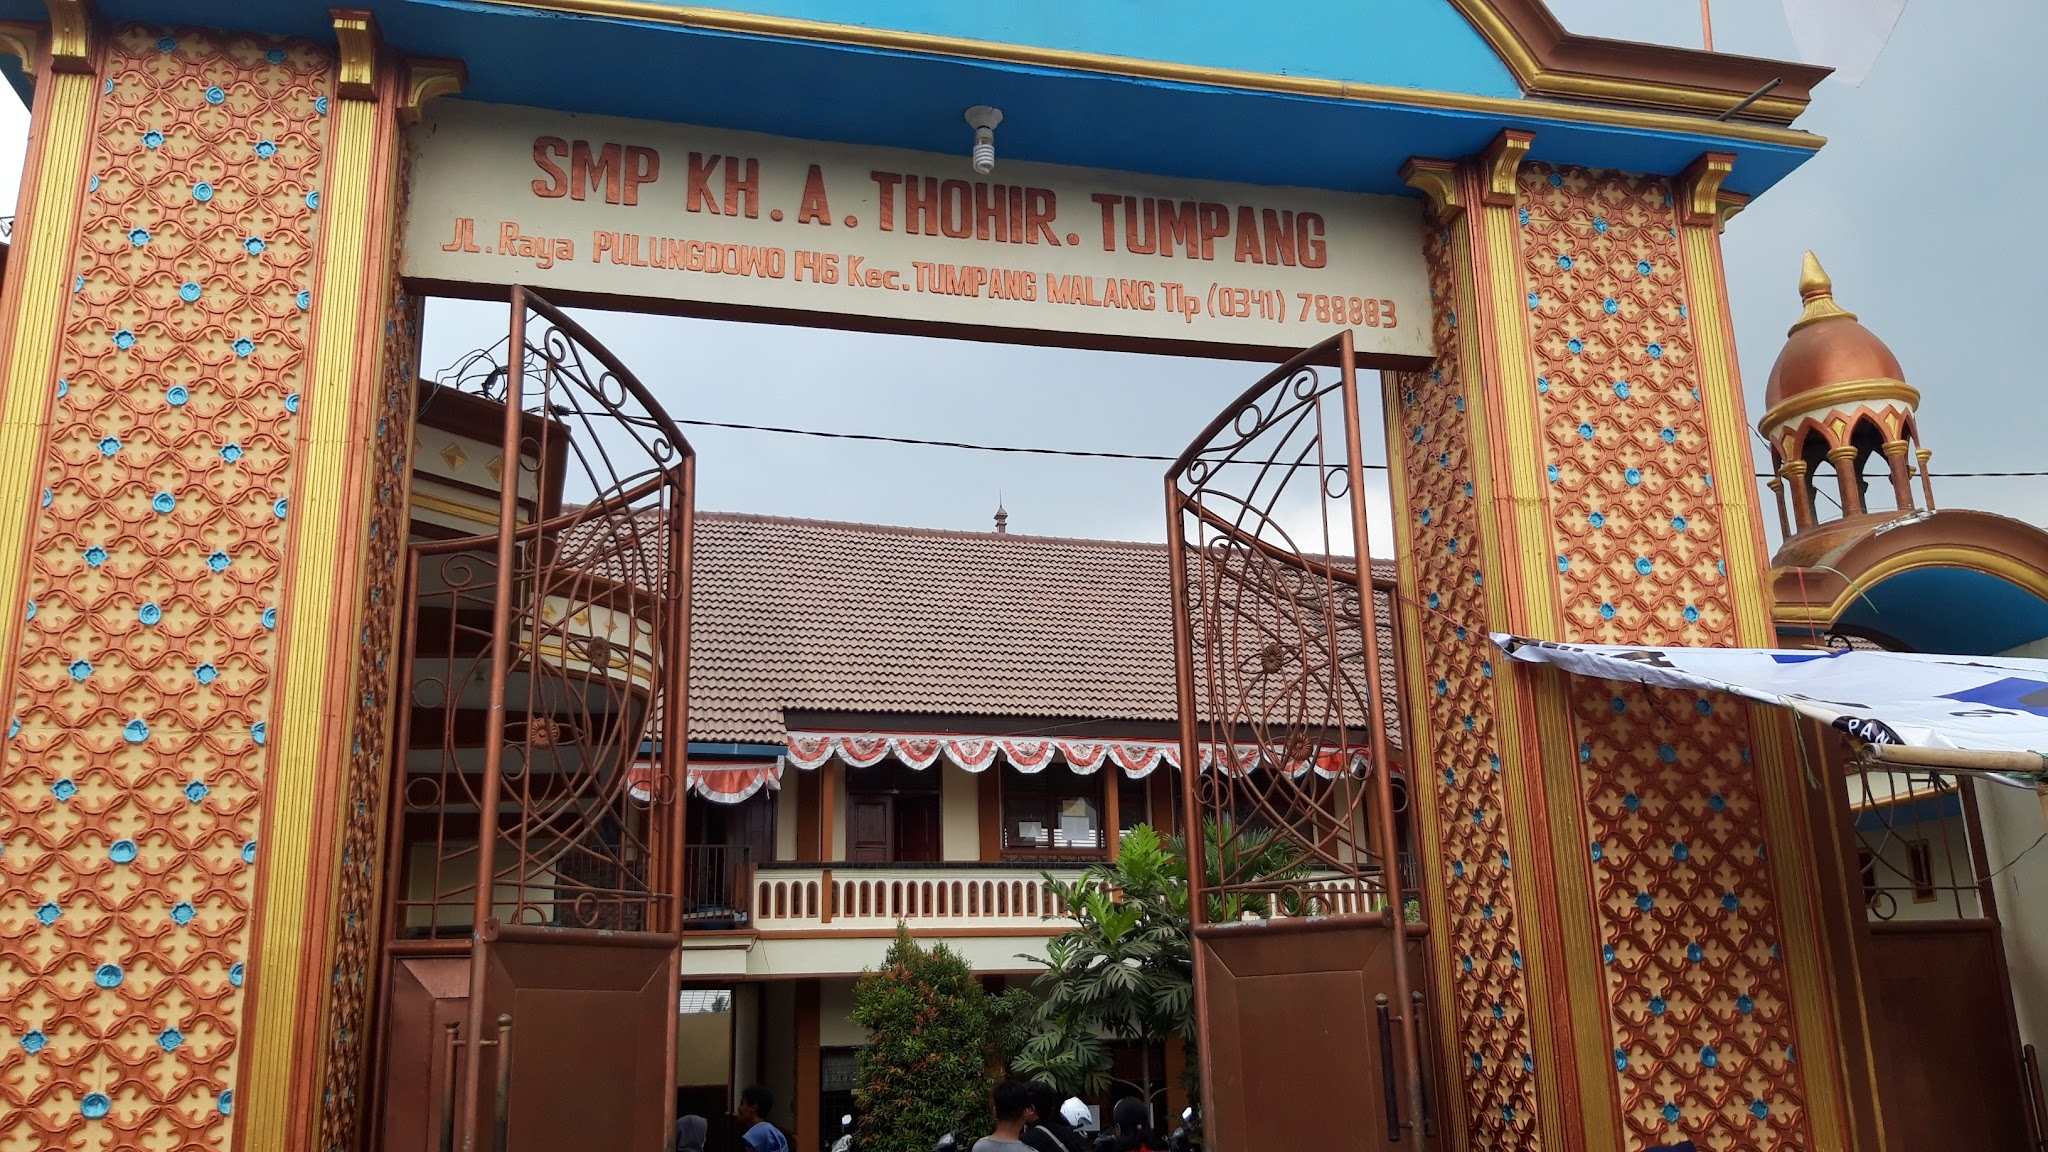 Foto SMP  Kh.a. Thohir Tumpang, Kab. Malang